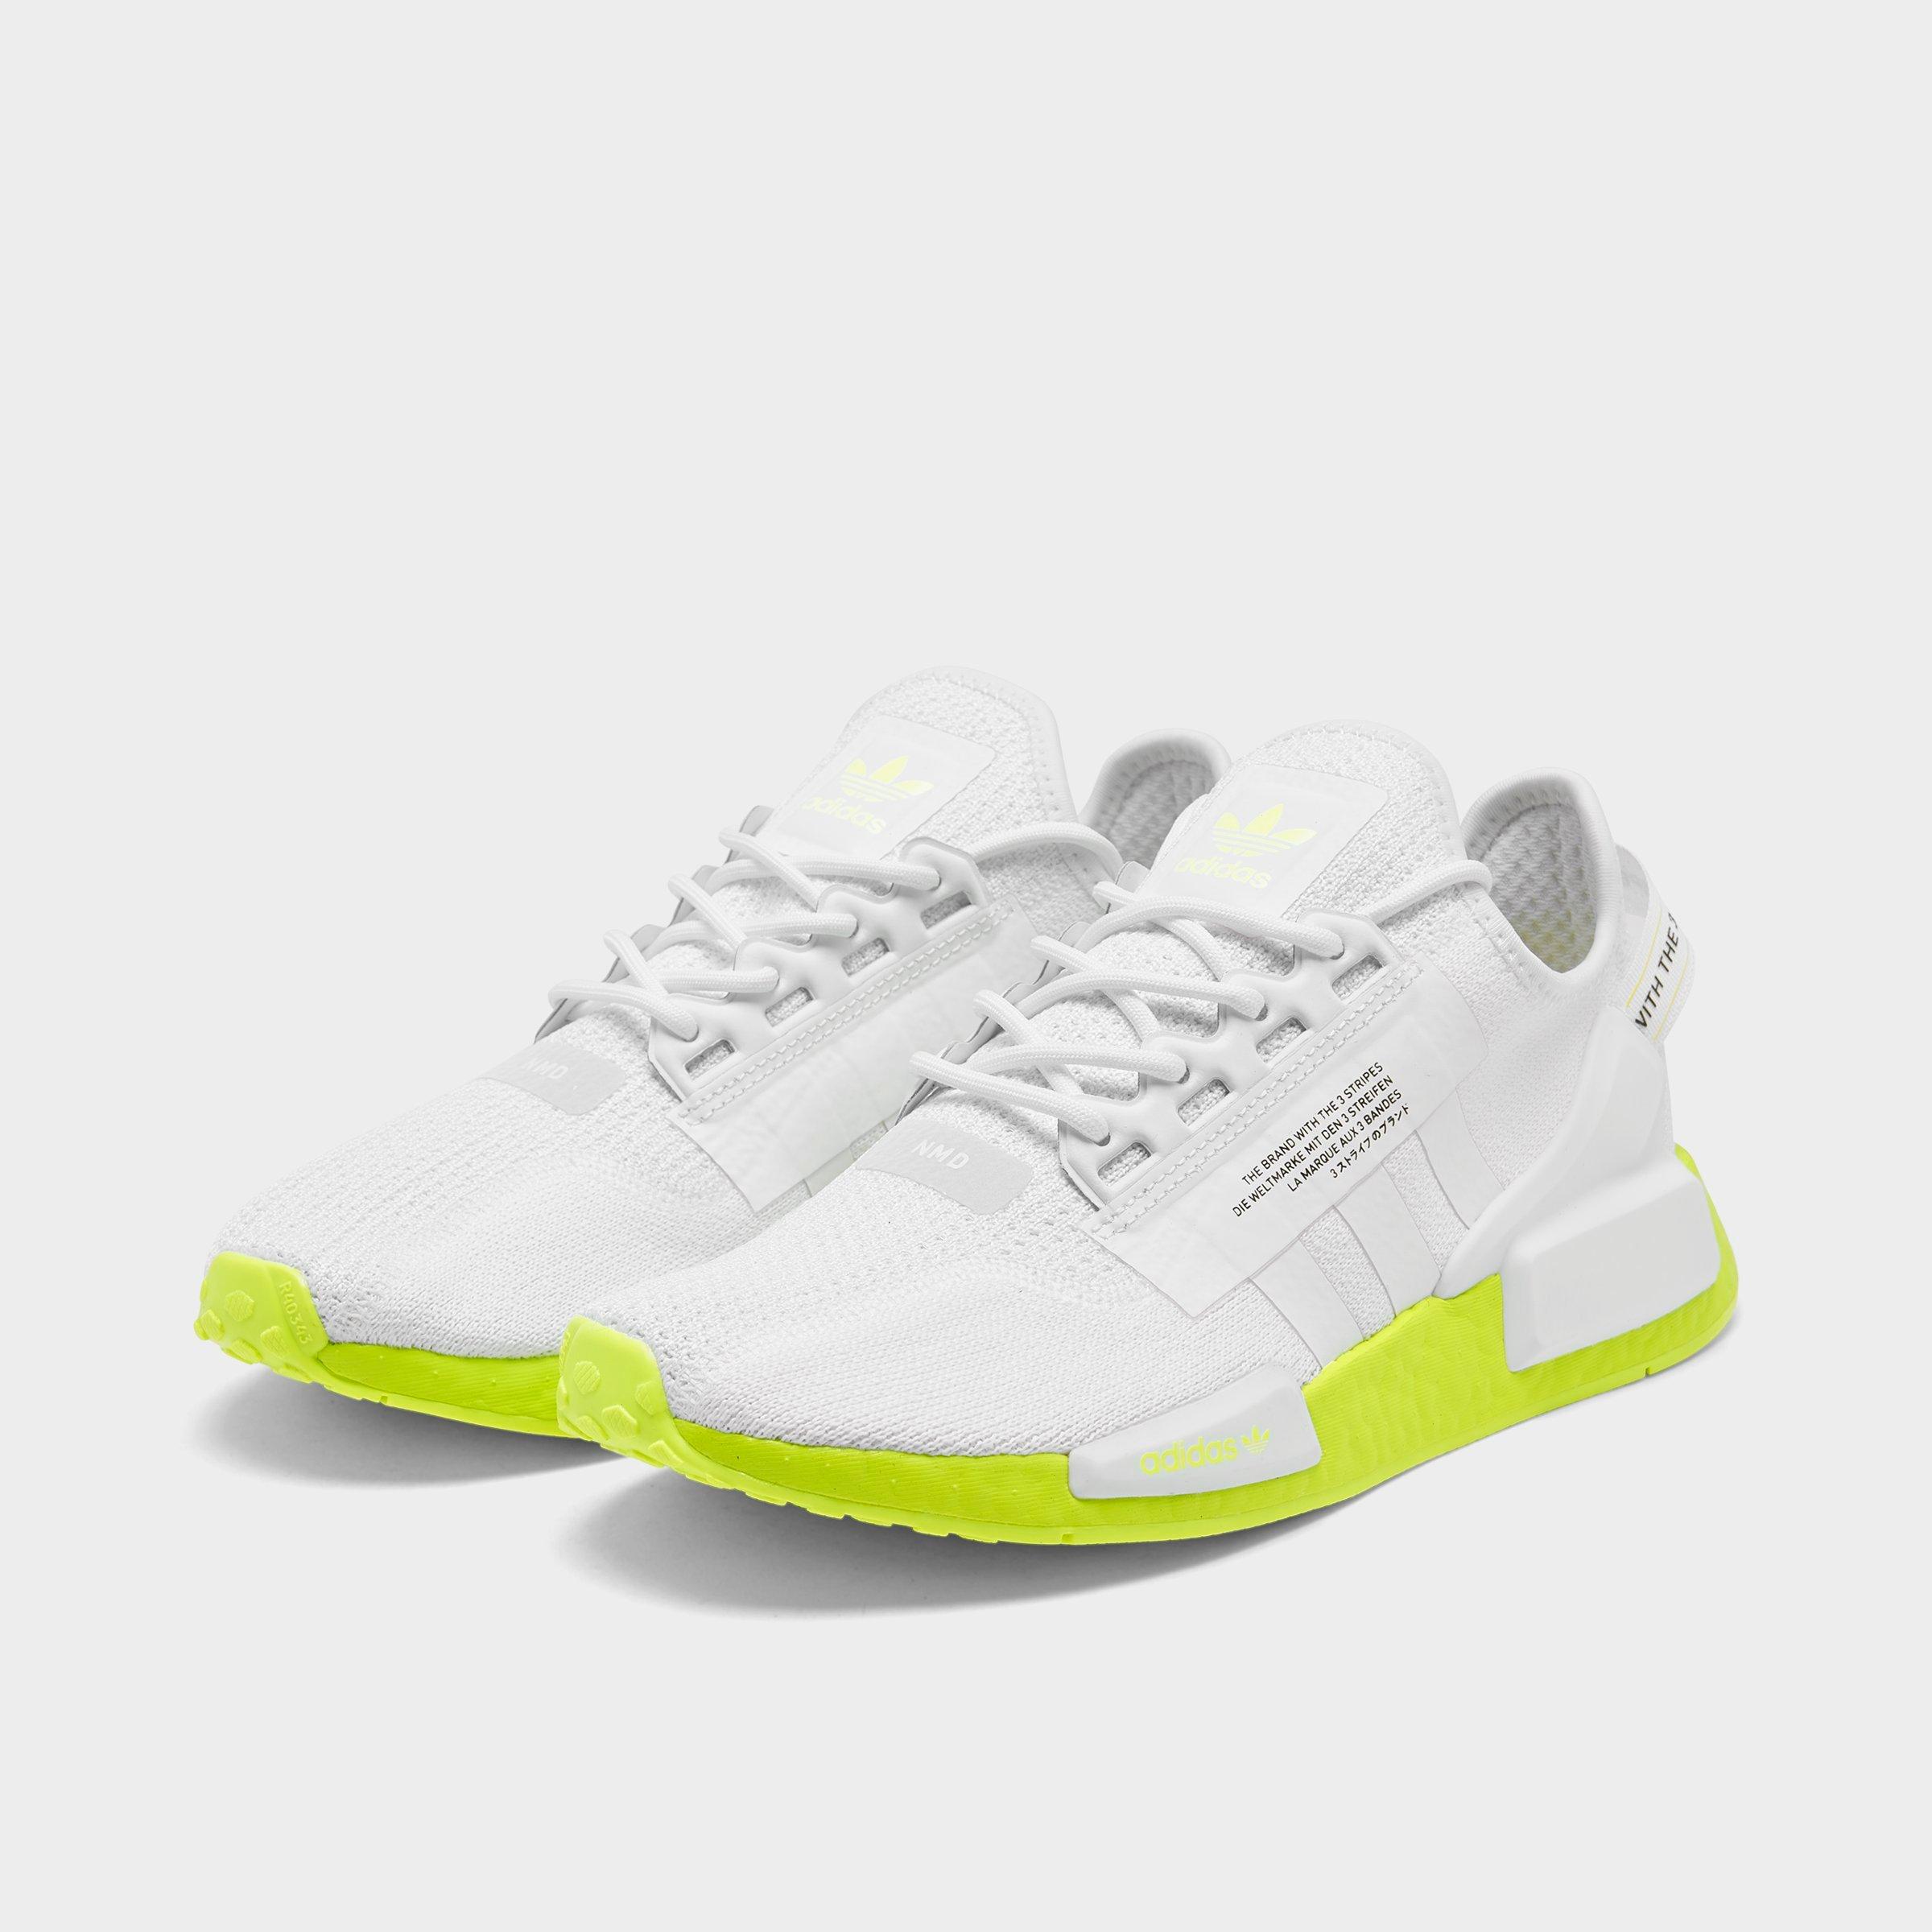 Adidas nmd r1 shoes Mens white size 8com